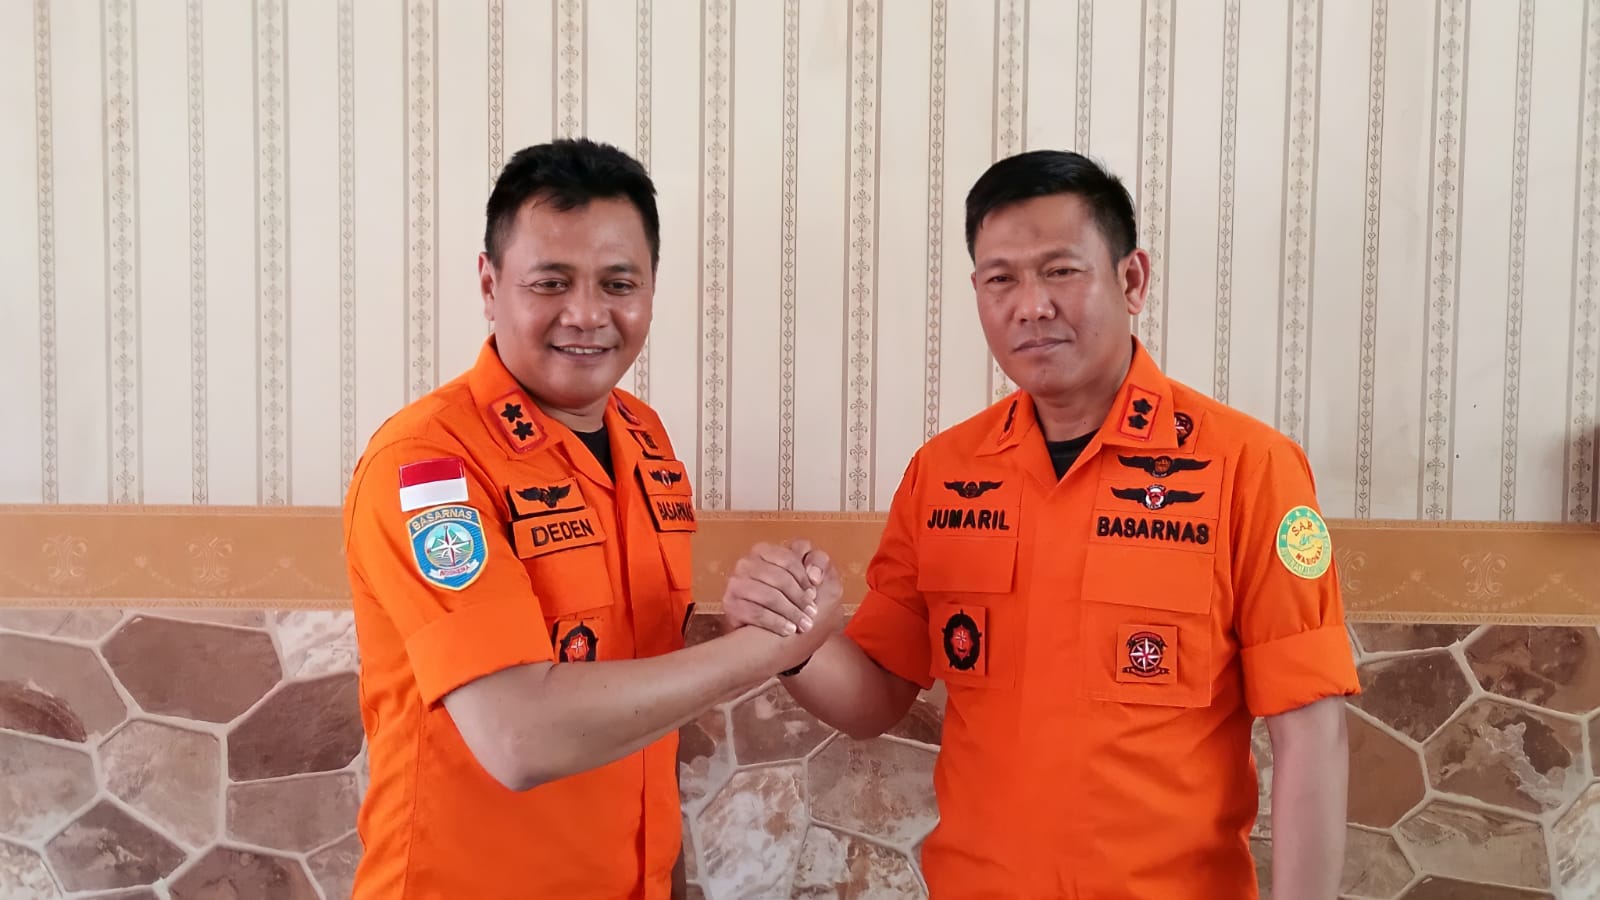 Kepala Kantor SAR Lampung, Deden Ridwansah (kiri) bersama Kepala Kantor SAR Bandung, Jumaril (kanan) saat foto bersama di Kantor SAR Bandung. (Yanuar/Jabar Ekspres)